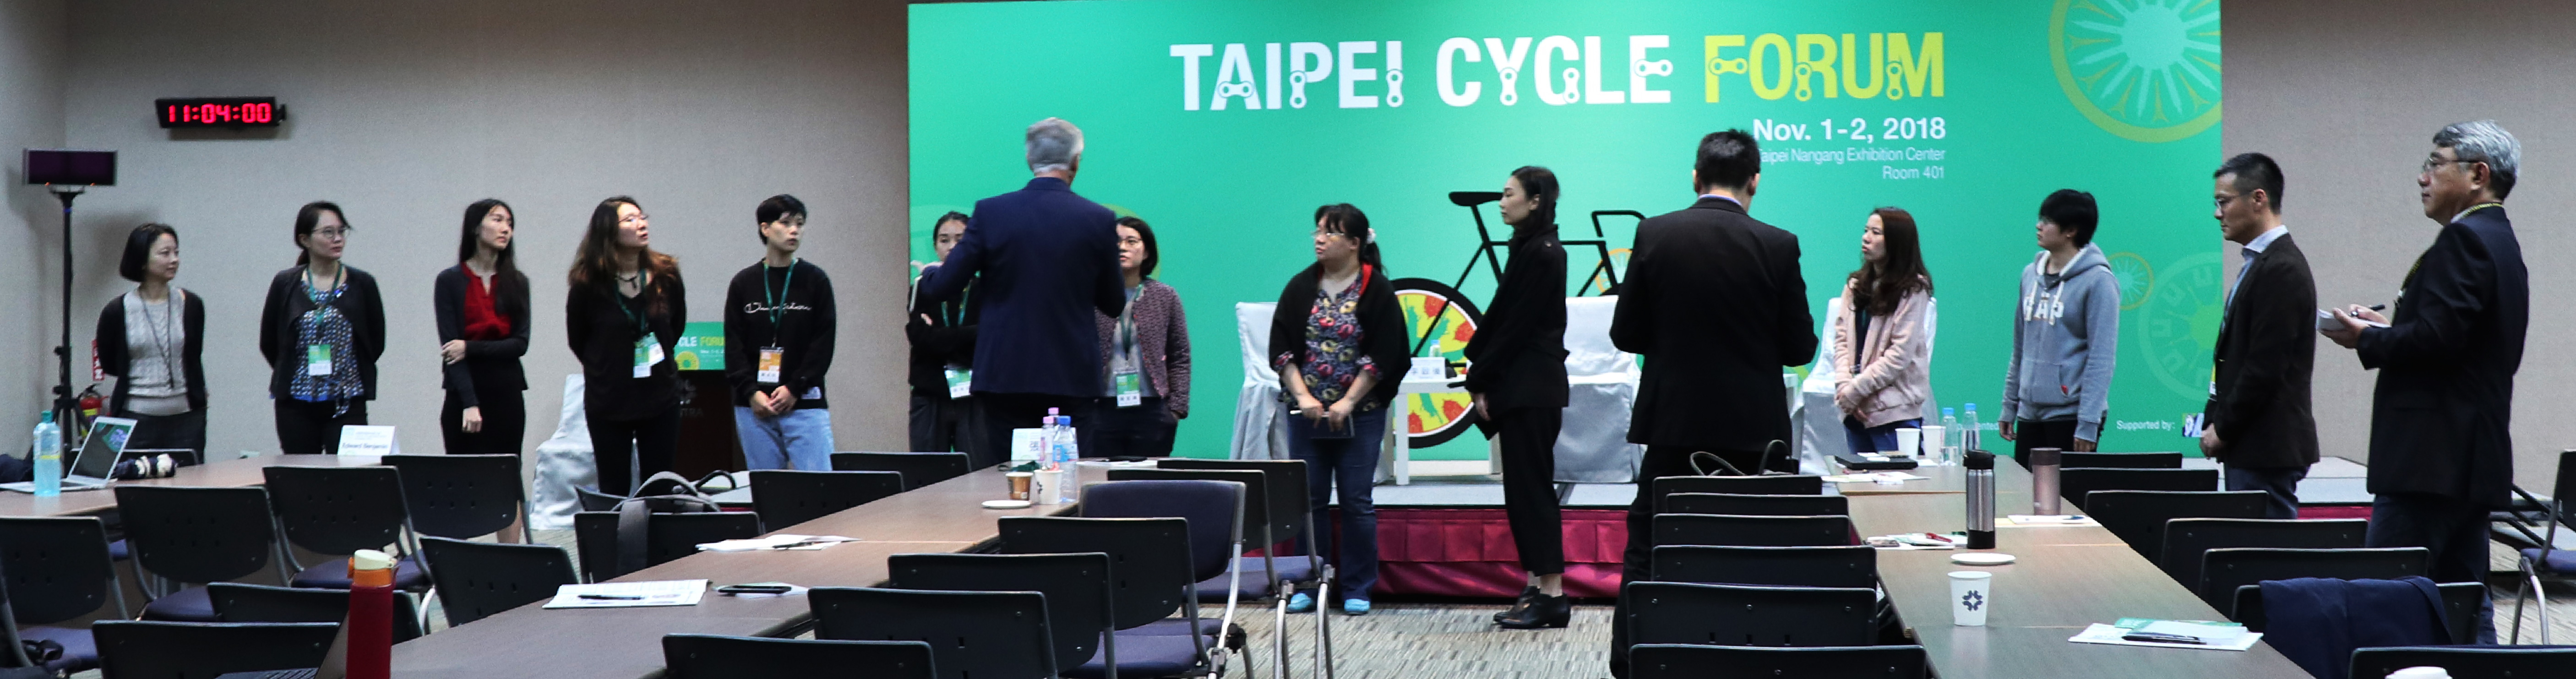 Taipei Cycle Forum 2018